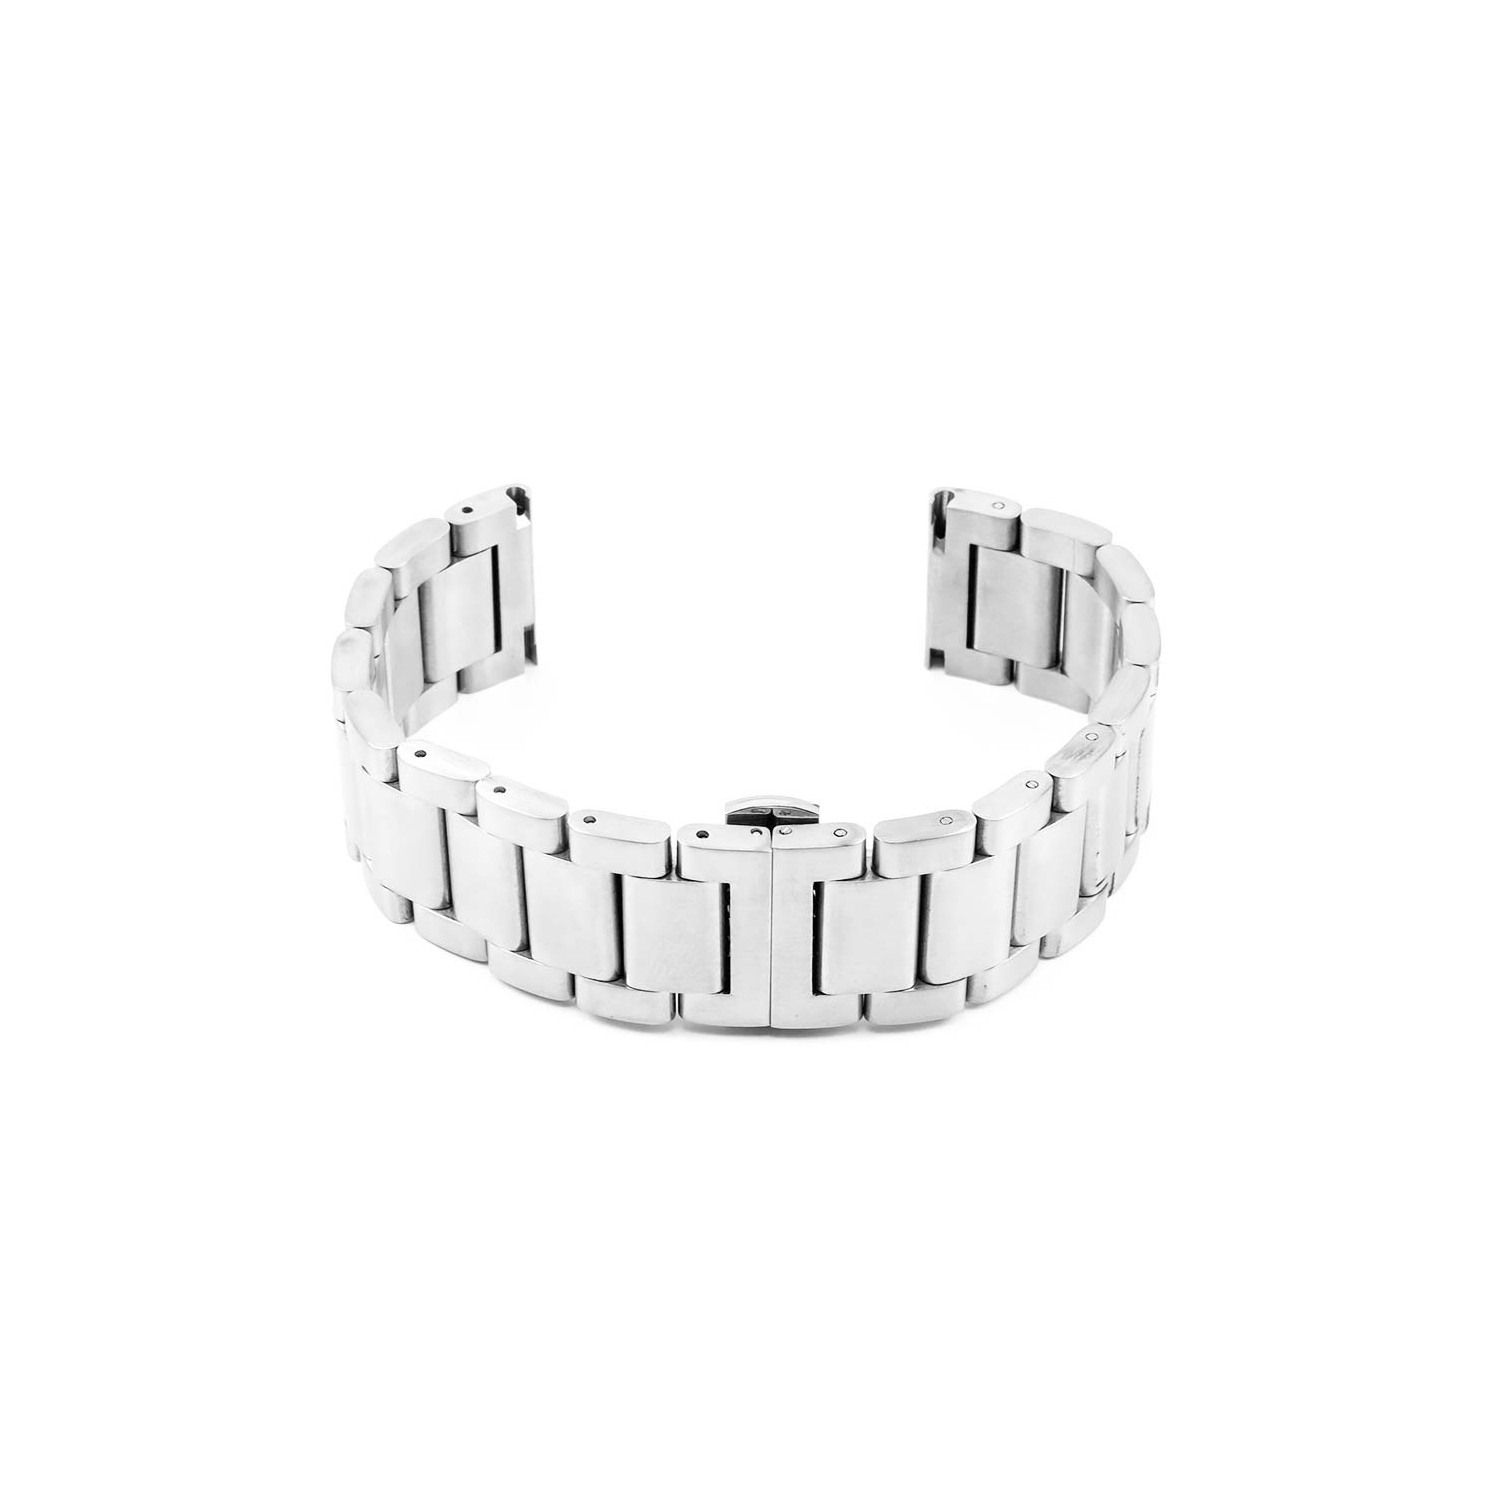 StrapsCo Stainless Steel Watch Bracelet for Fossil Gen 4 Smartwatch - 22mm - Silver